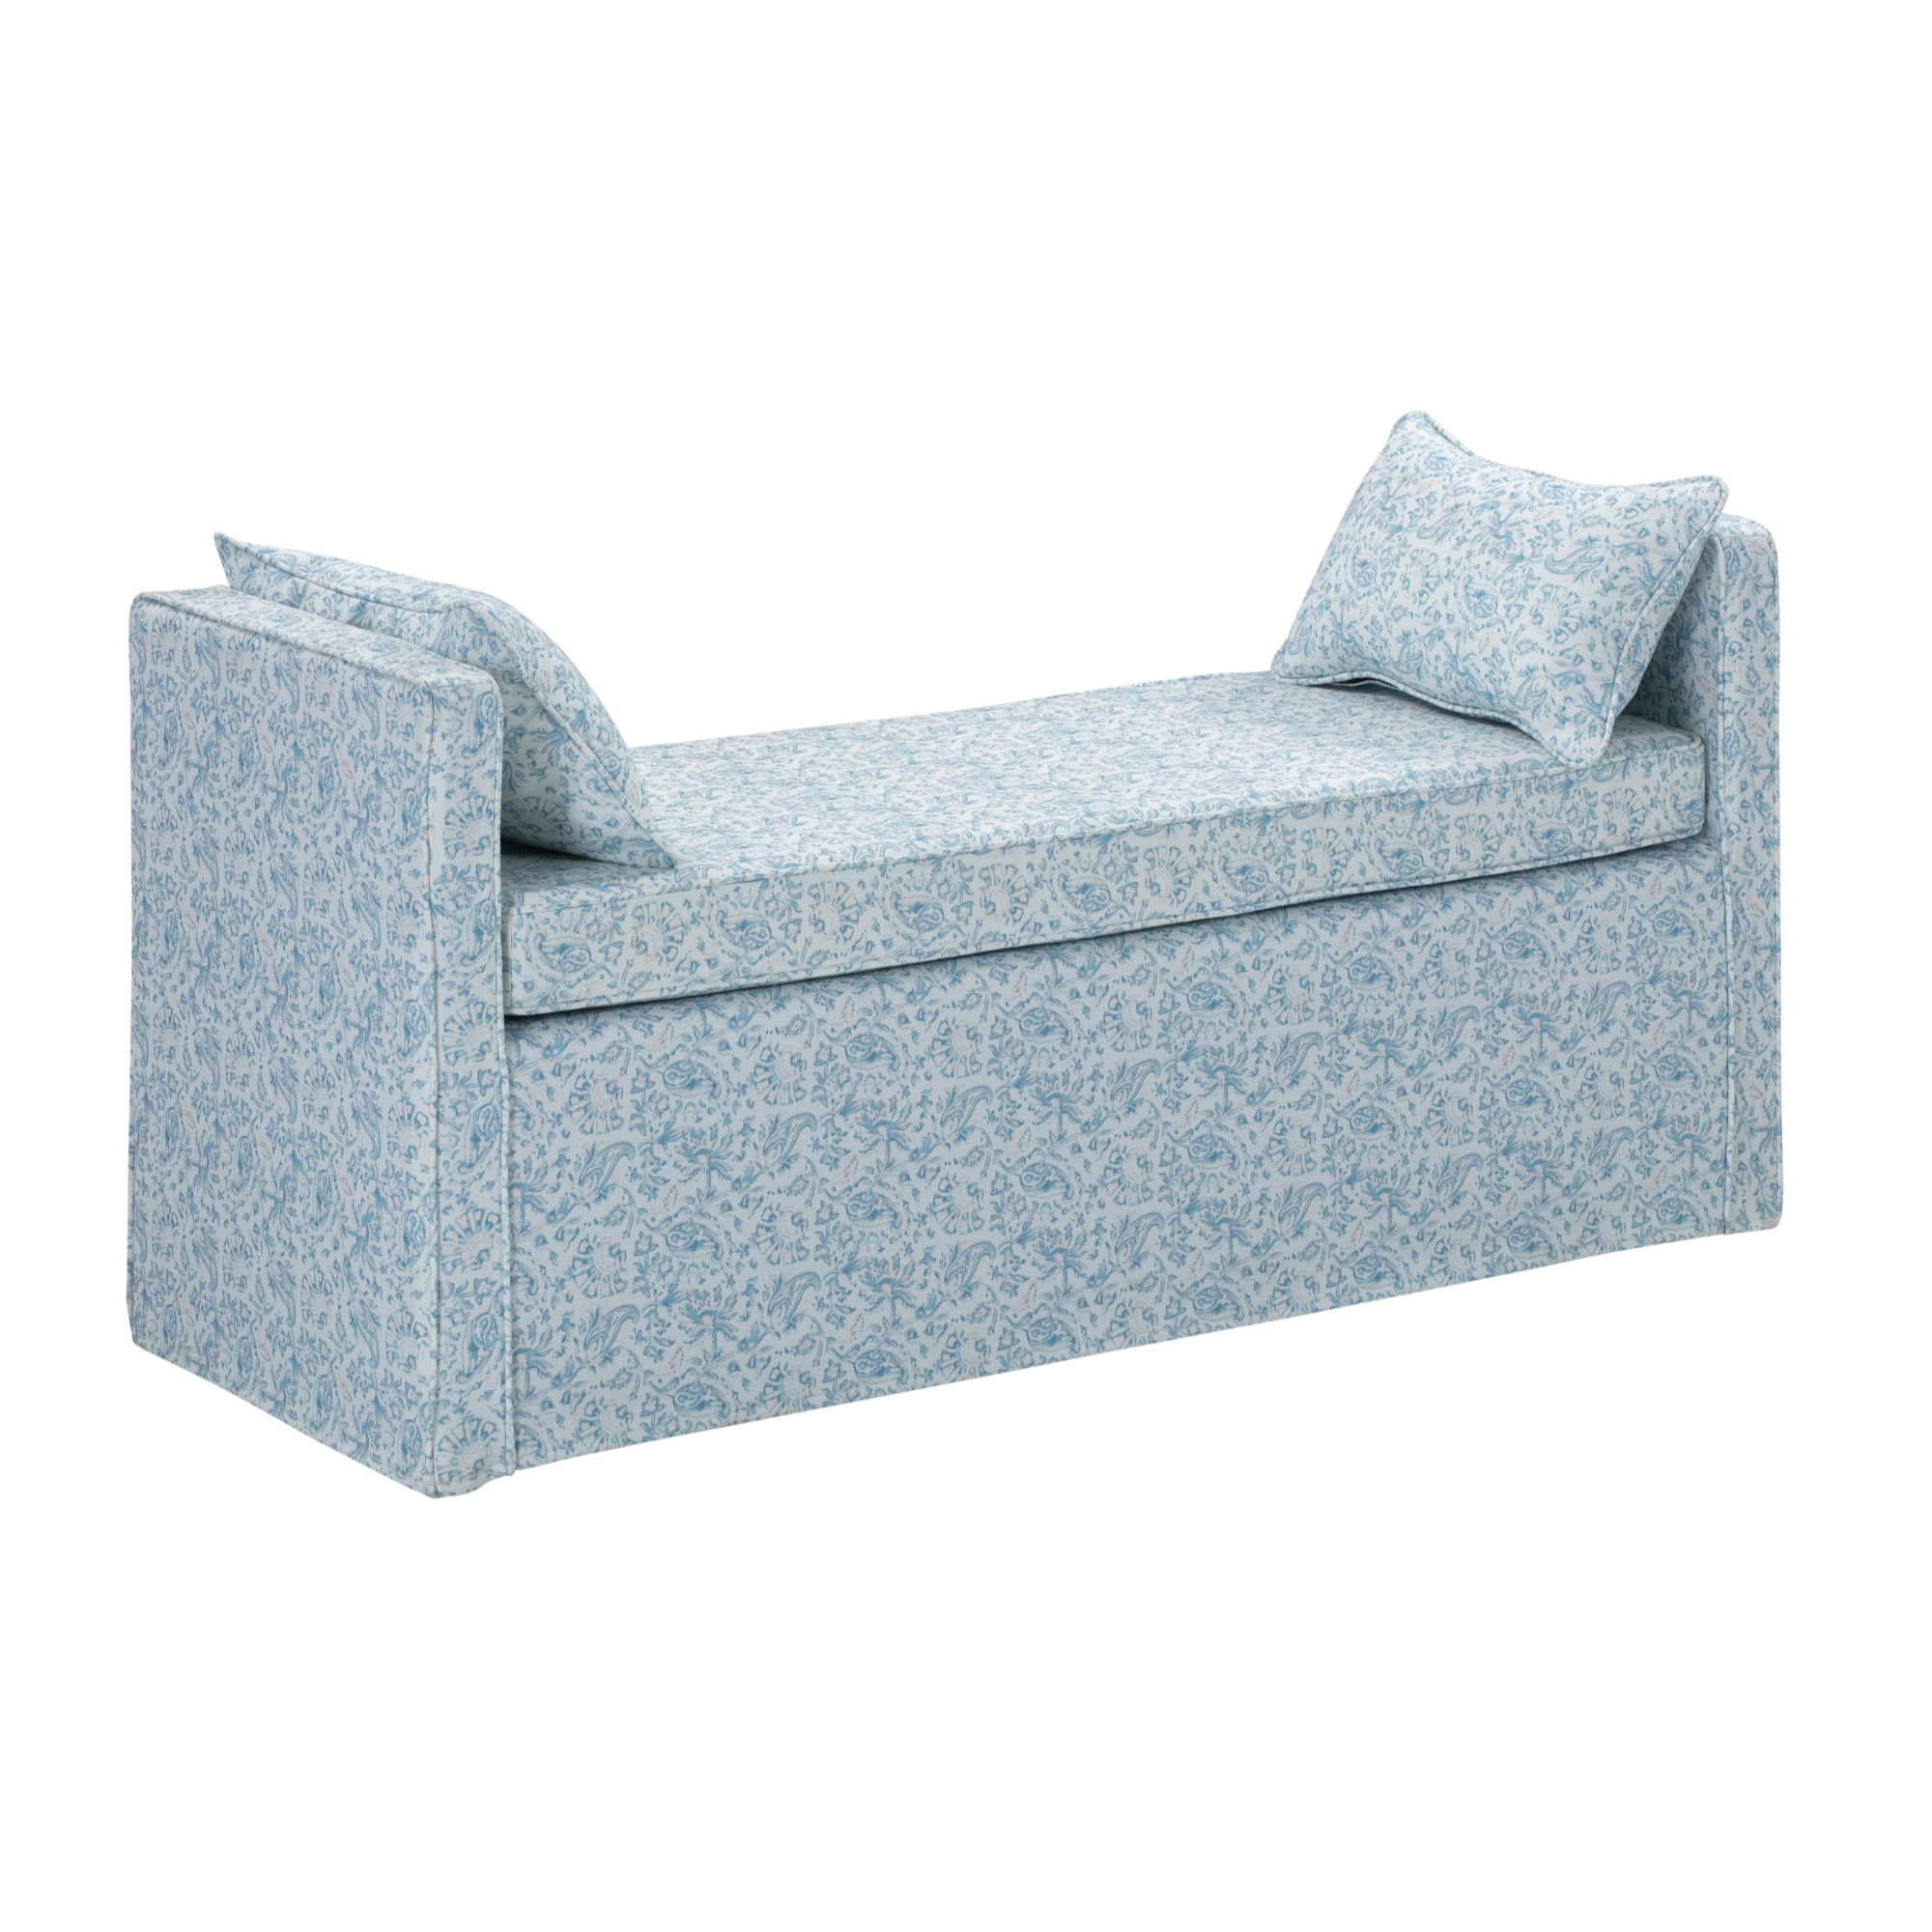 53" Blue And Black Upholstered Linen Floral Bench-490978-1